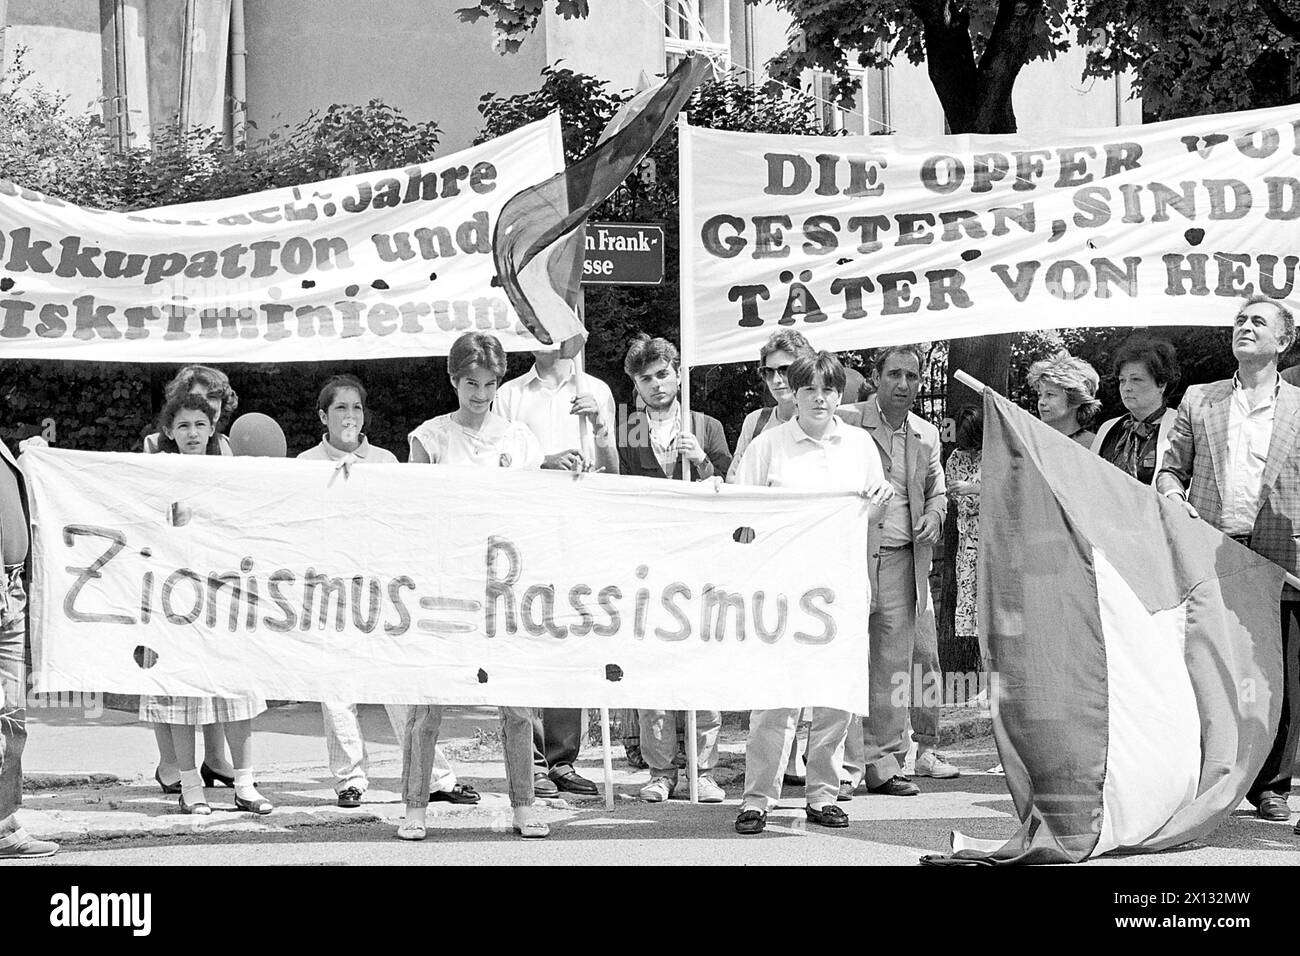 Wien am 21. April 1988: Die Palästinensische Gemeinschaft Österreichs demonstrierte vor der israelischen Botschaft in Wien im Rahmen des 40. Jahrestages des israelischen Staates. - 19880515 PD0003 - Rechteinfo: Rechte verwaltet (RM) Stockfoto